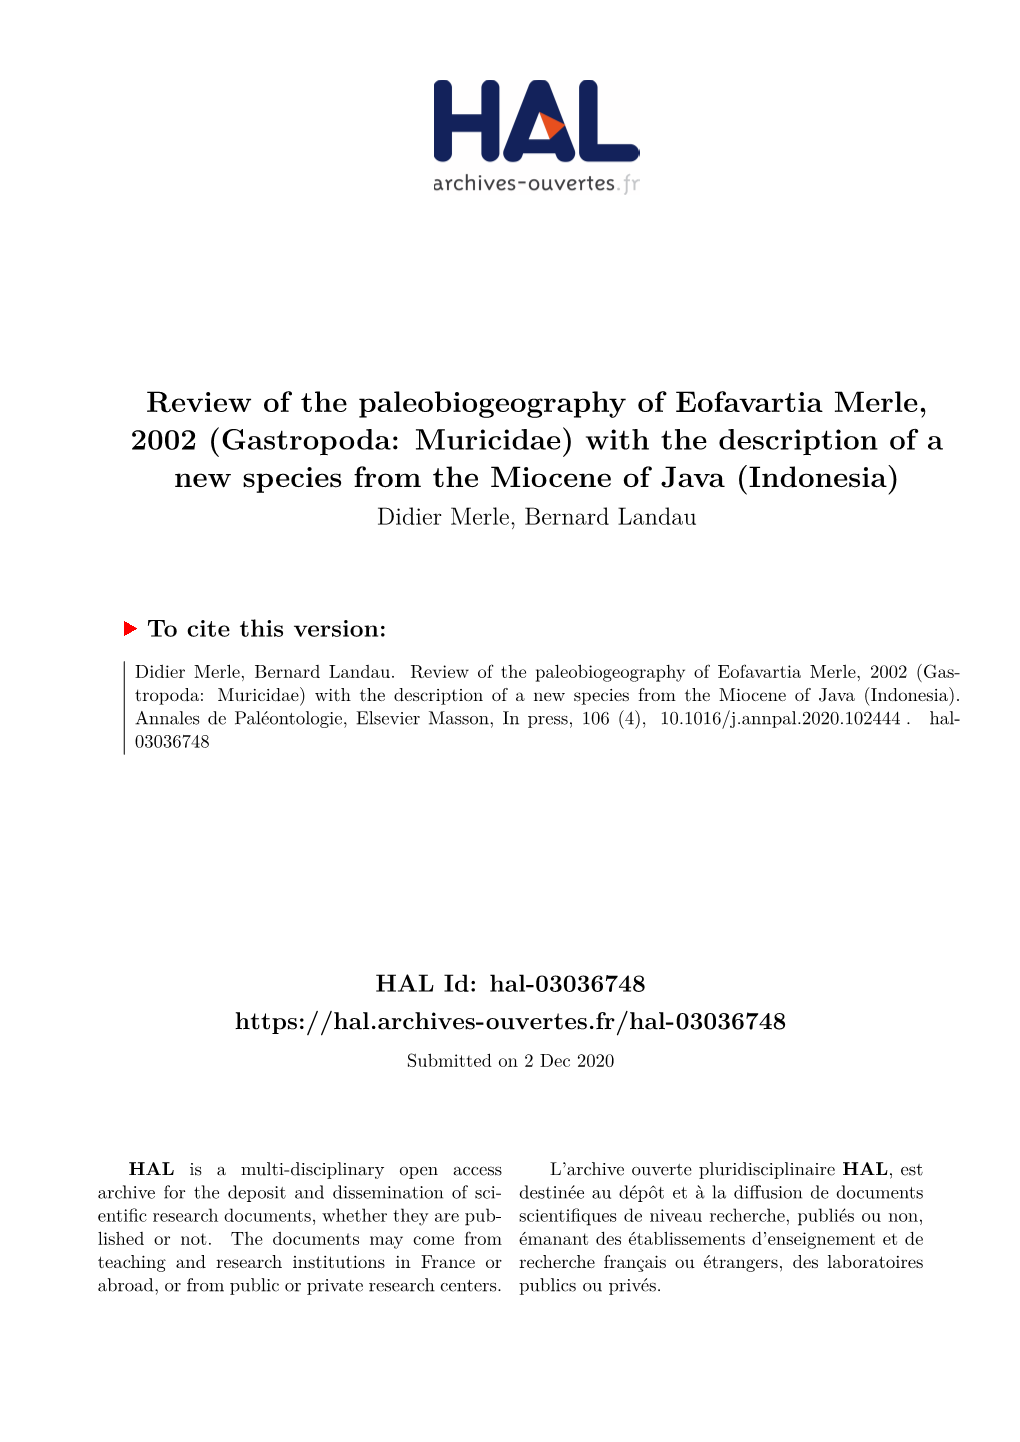 Review of the Paleobiogeograph